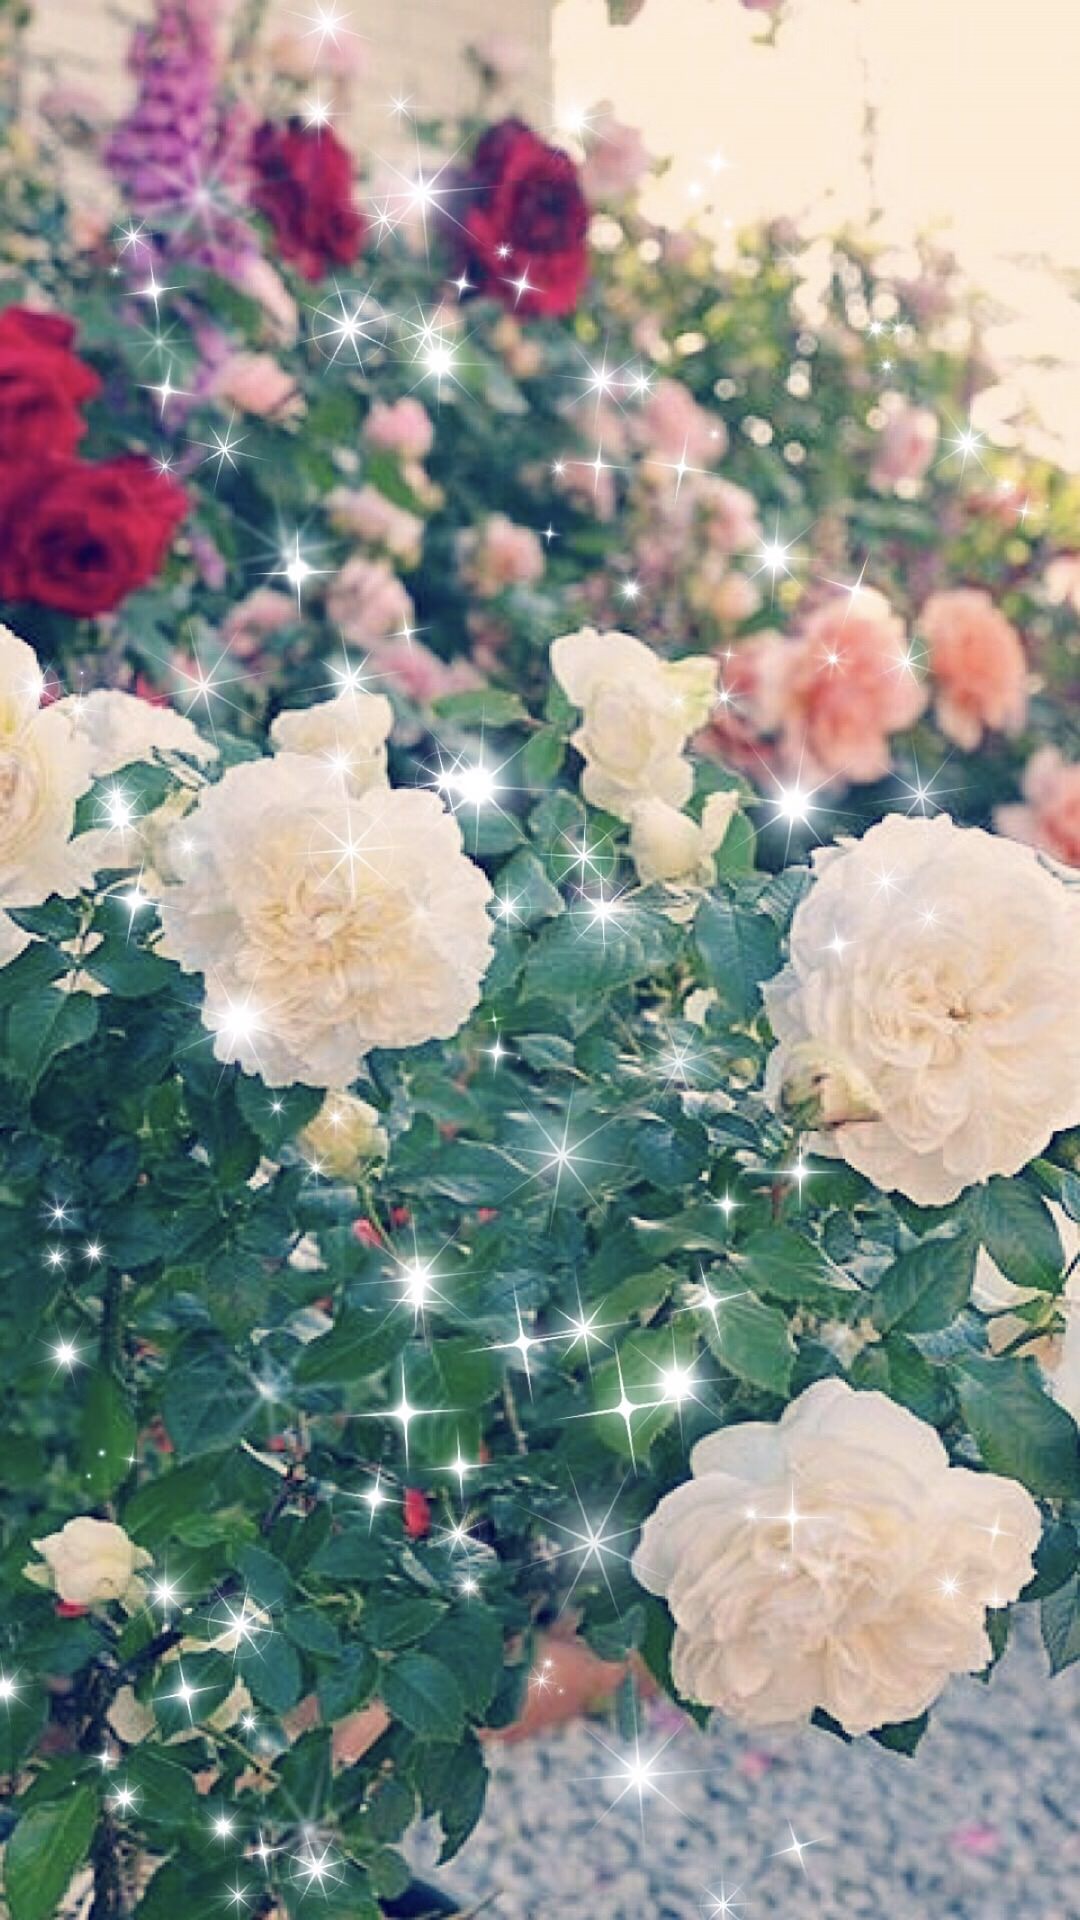 Kebun Bunga Mawar Wallpapersc Android